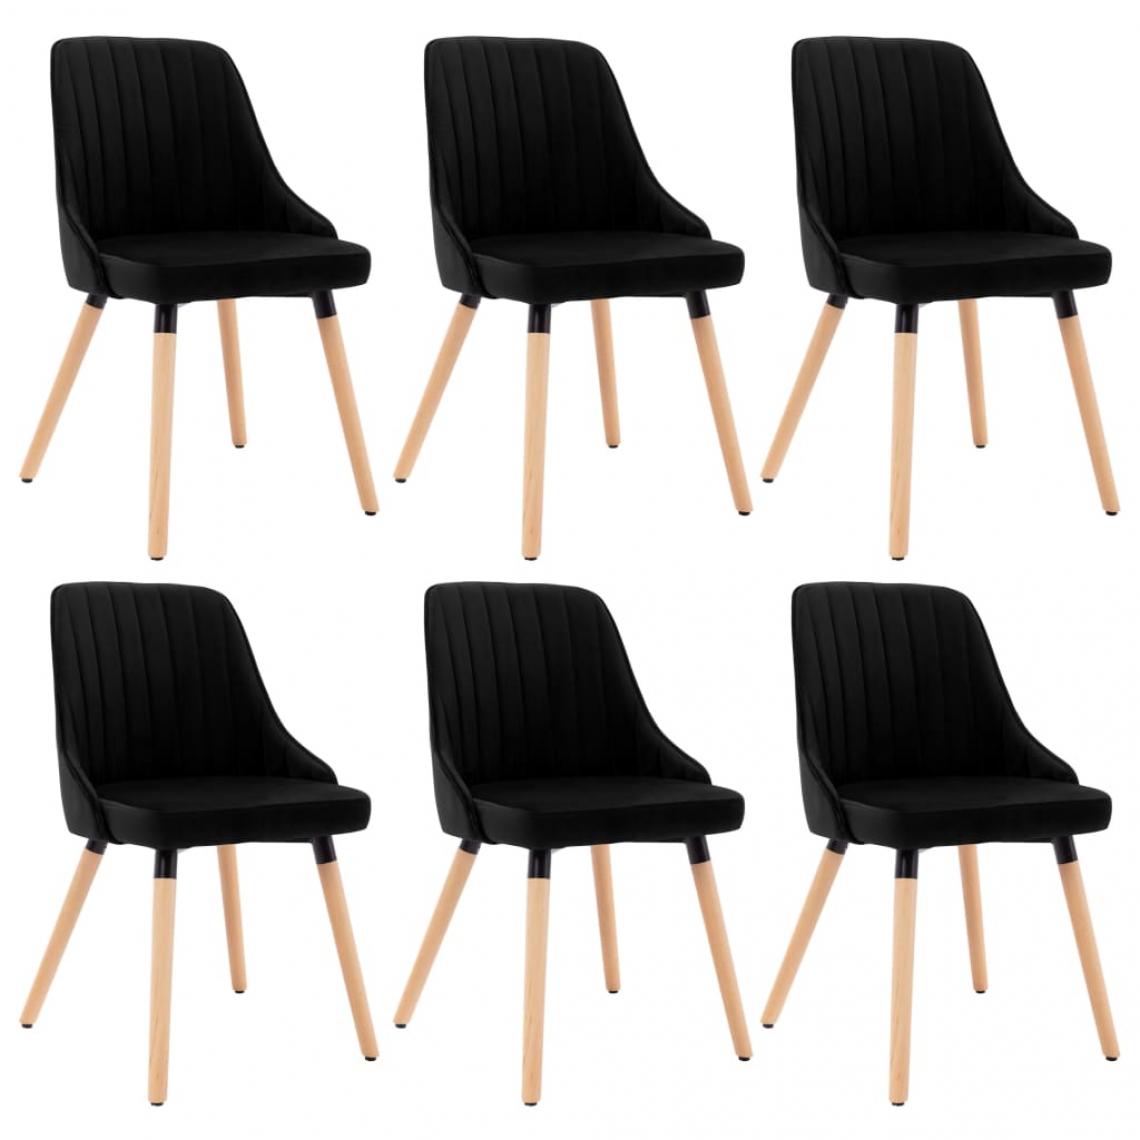 Decoshop26 - Lot de 6 chaises de salle à manger cuisine design scandinave velours noir CDS022735 - Chaises